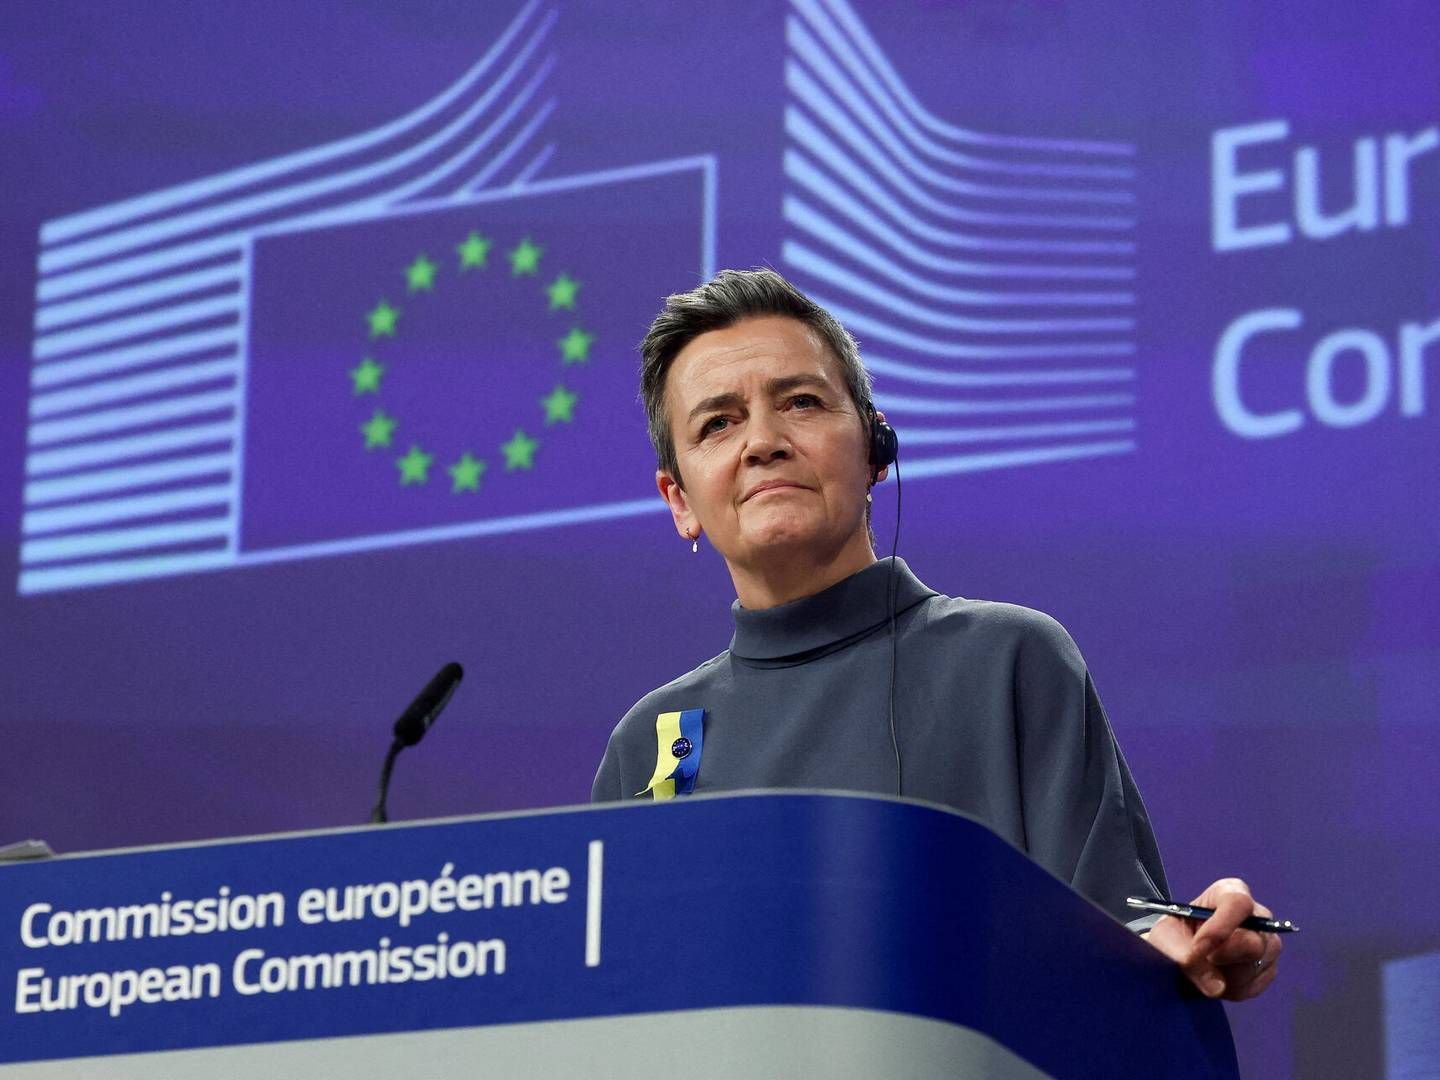 "Vi er kommet meget tættere på forretningsmodellen hos de virksomheder, som især er i søgelyset,” siger Margrethe Vestager om ny EU-lov. | Photo: Yves Herman/Reuters/Ritzau Scanpix